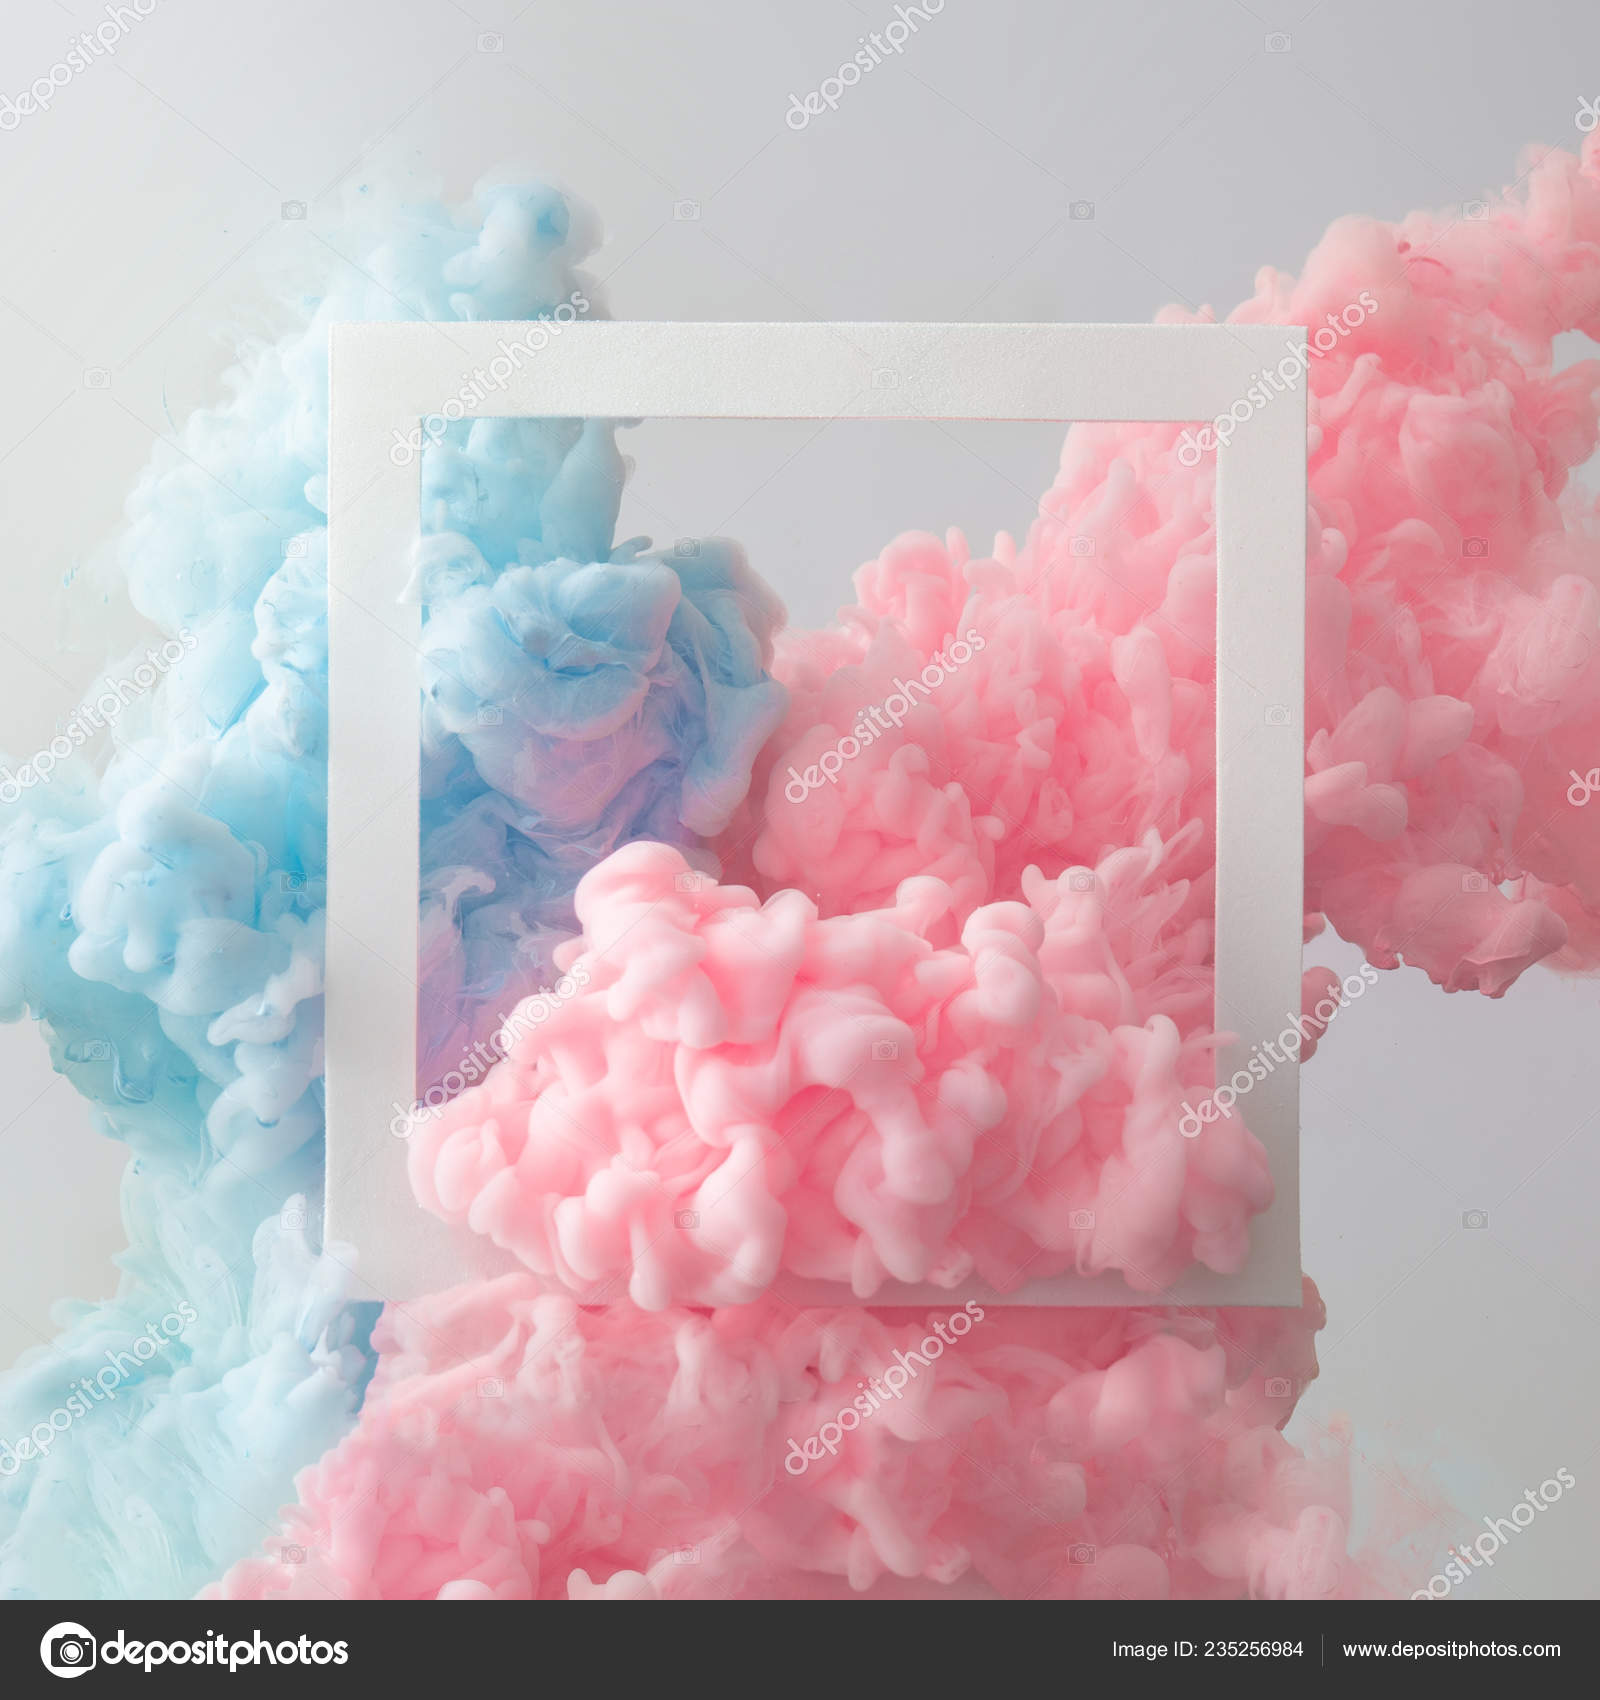 Khung ảnh mây hồng xanh trên nền xám sẽ giúp cho bức ảnh của bạn trở nên đặc biệt hơn bao giờ hết! Khung mây tĩnh lặng và sắc hồng xanh tươi mới sáng tạo sẽ khiến cho bức ảnh của bạn nổi bật hơn, thu hút mọi ánh nhìn. Hãy thử tải về và sử dụng ngay cho tác phẩm của bạn!